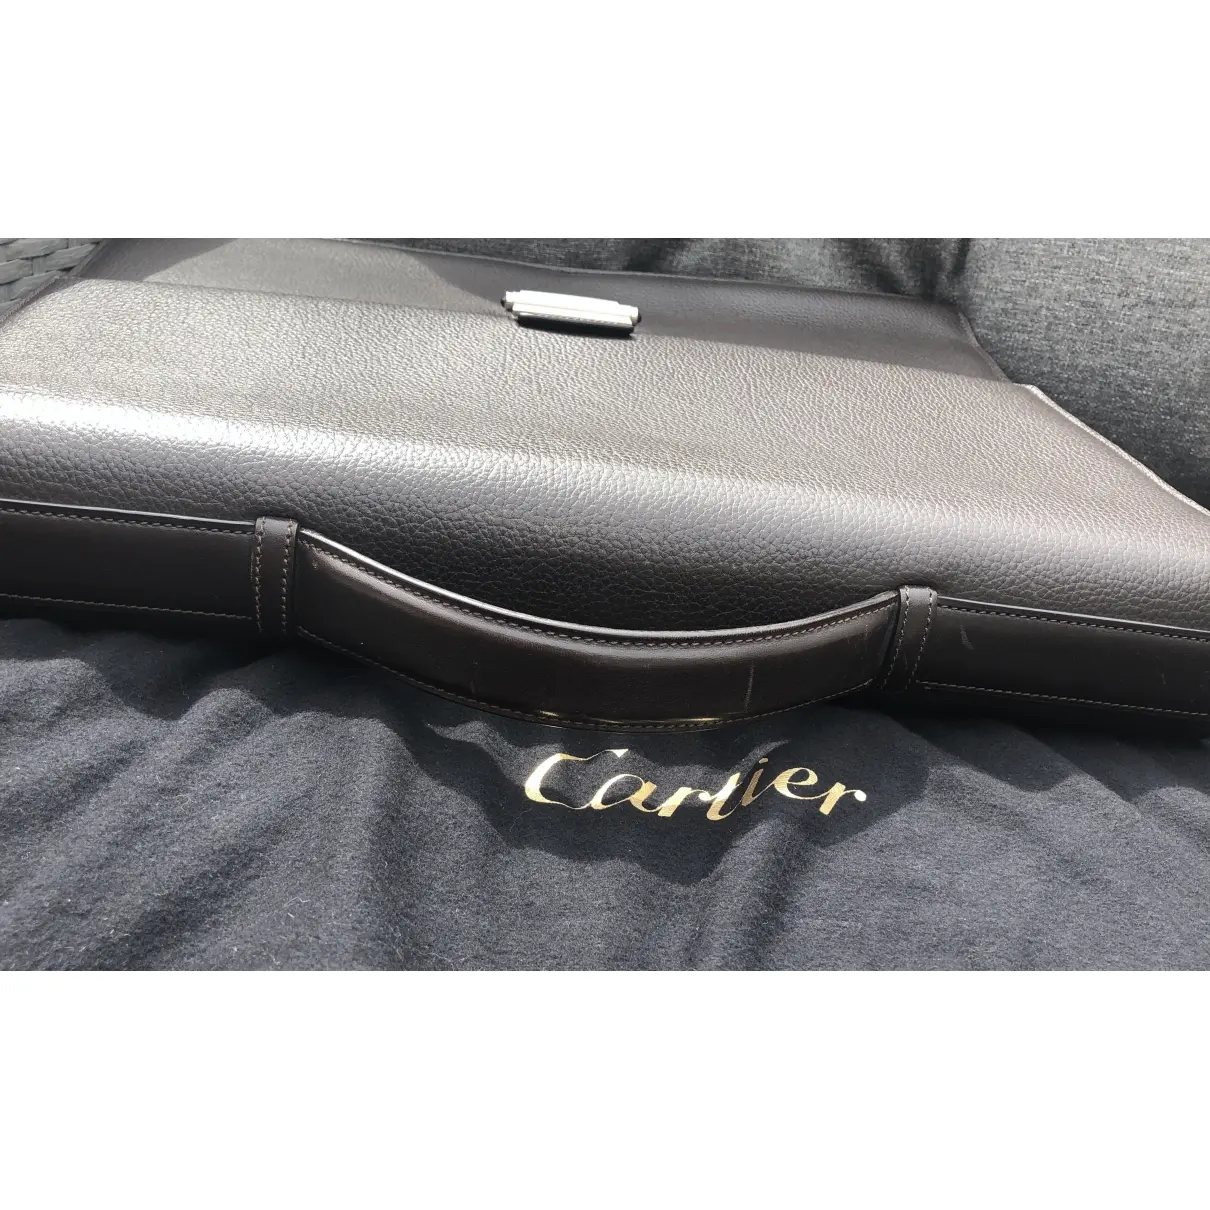 Luxury Cartier Bags Men